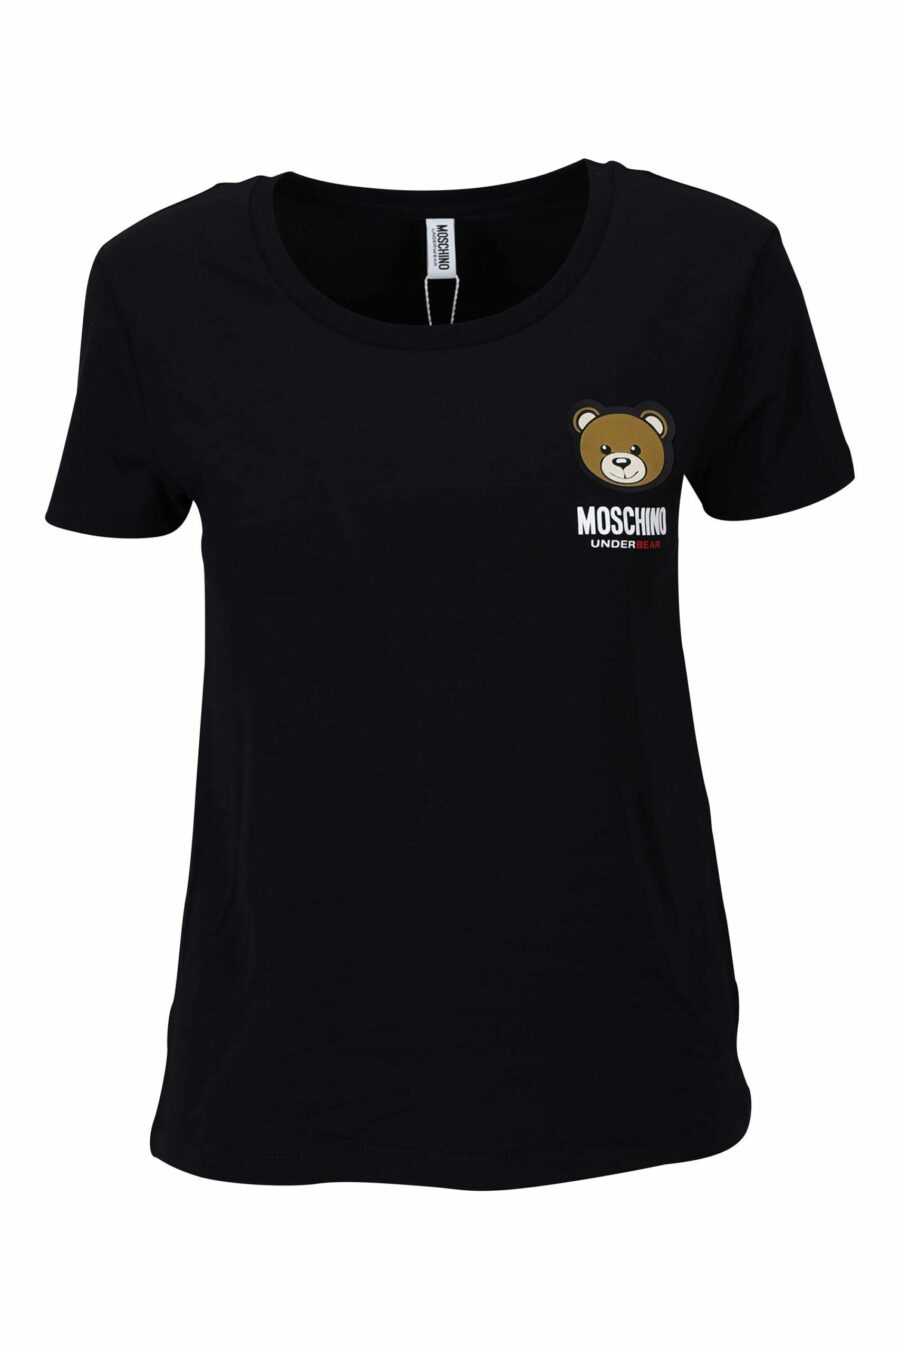 Schwarzes T-Shirt mit Logo-Bärenaufnäher "underbear" - 667113034348 skaliert